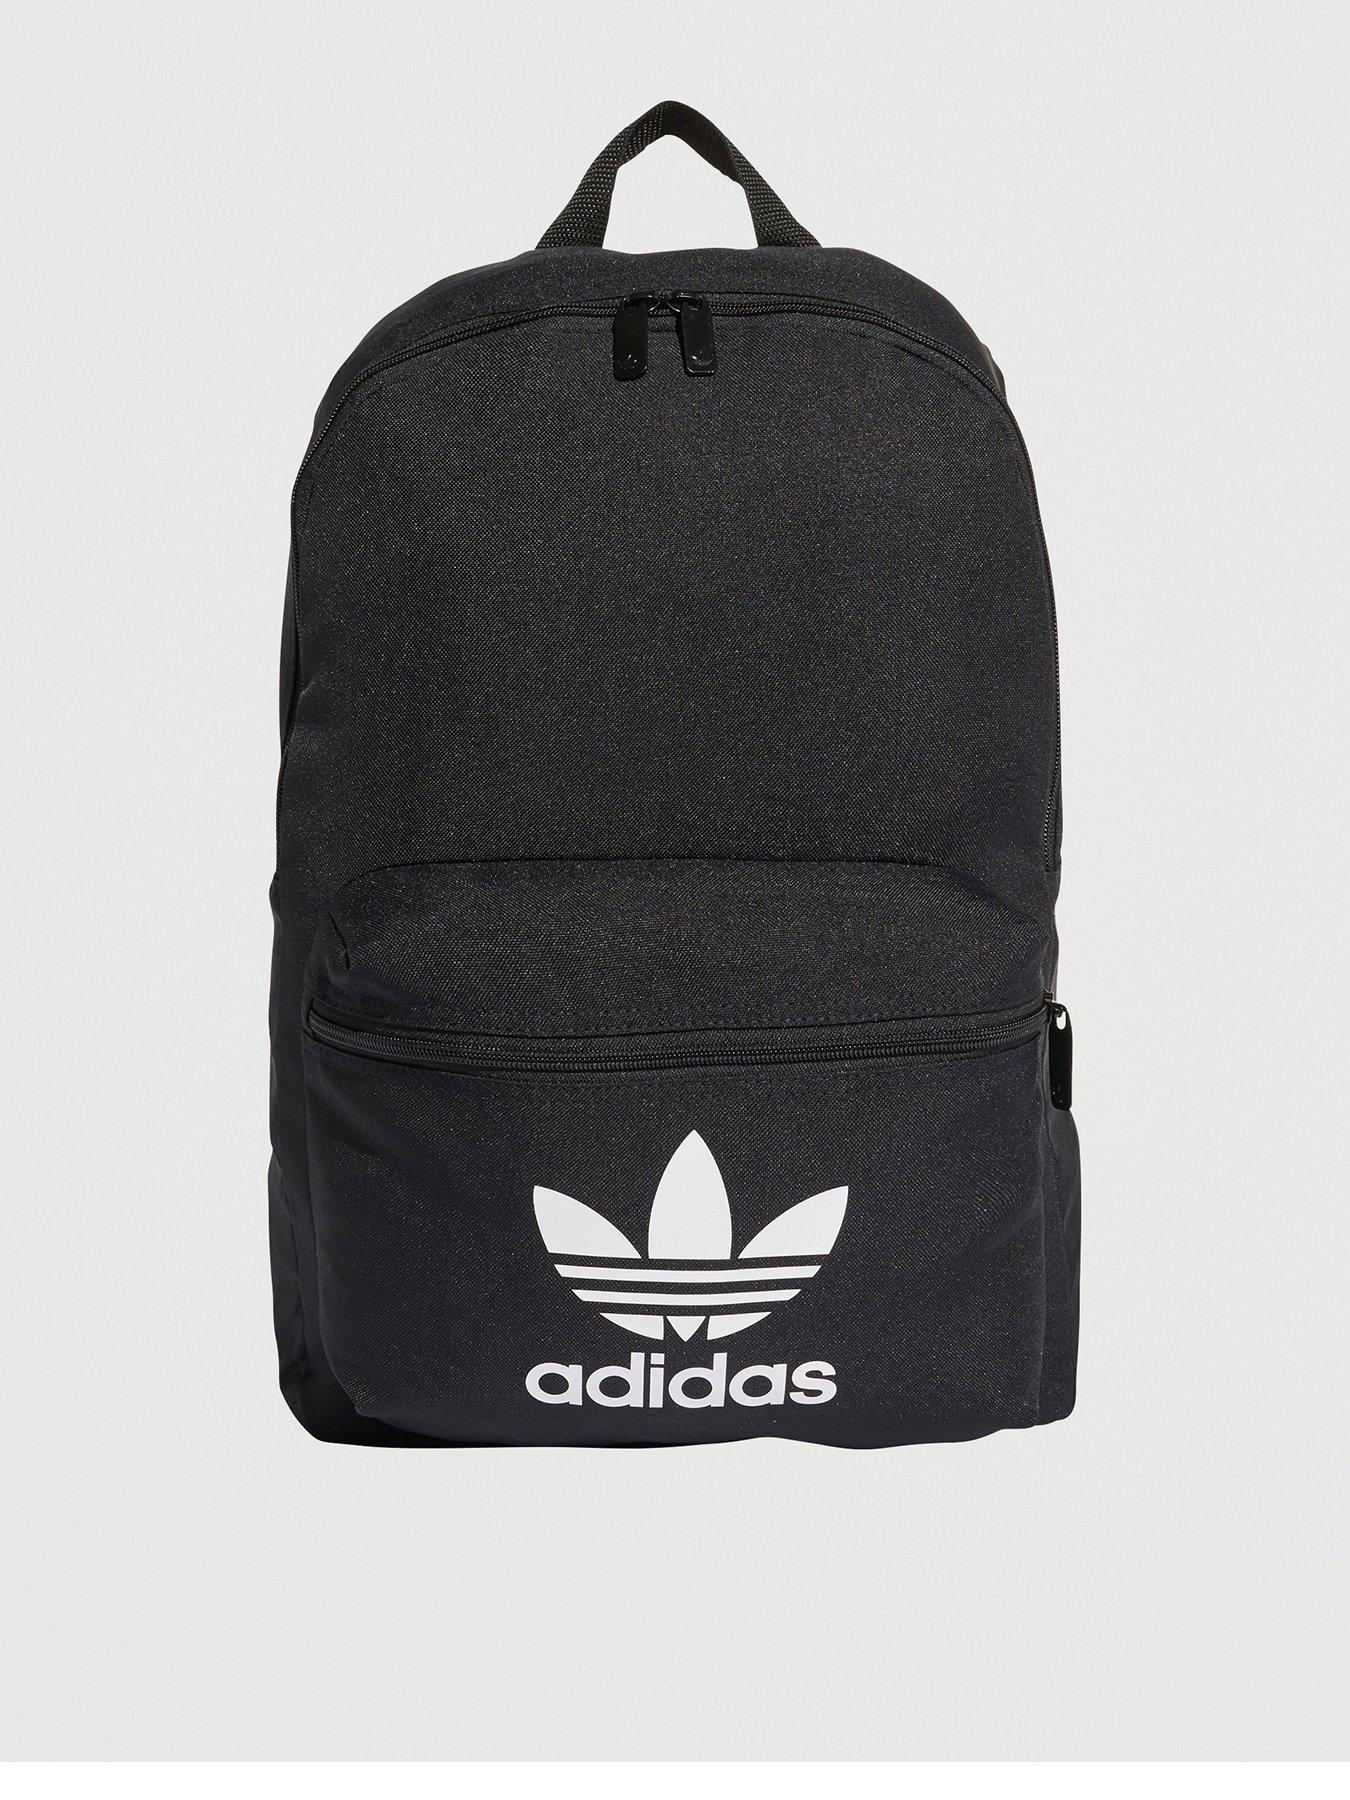 adidas backpack uk